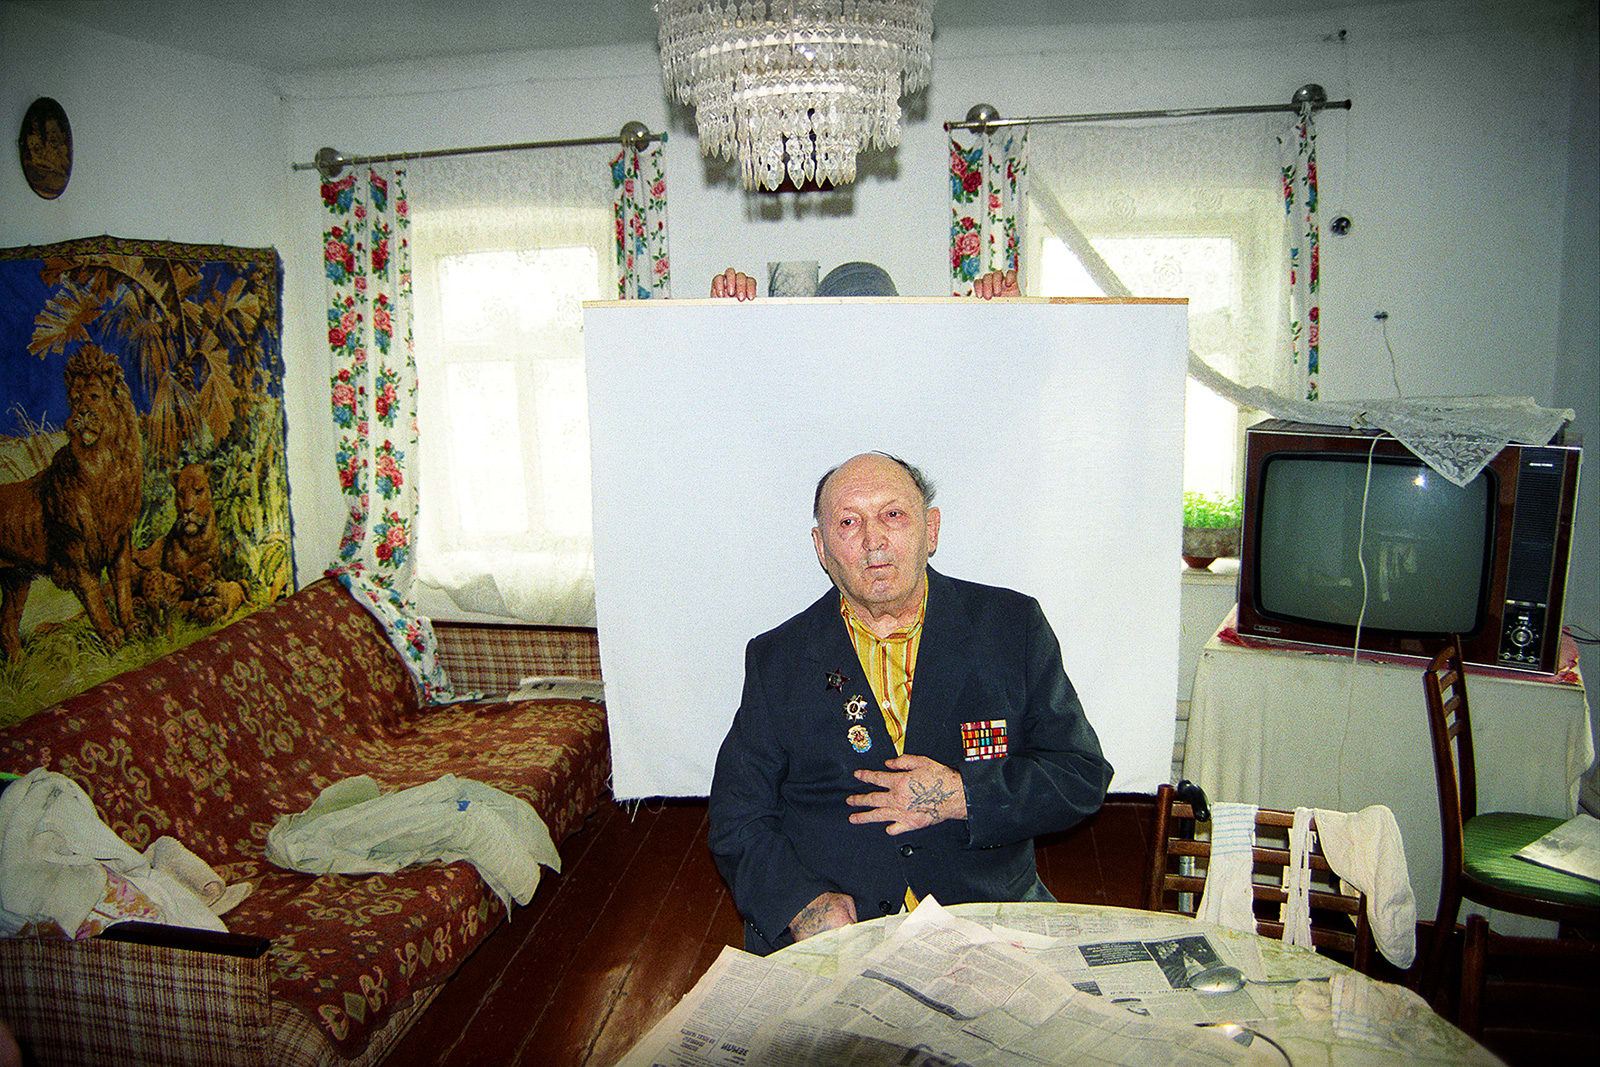 تذكير بالواقع القاتم..مصور يكشف كواليس مقلقة لصور جوزات سفر الأوكرانيين في التسعينيات